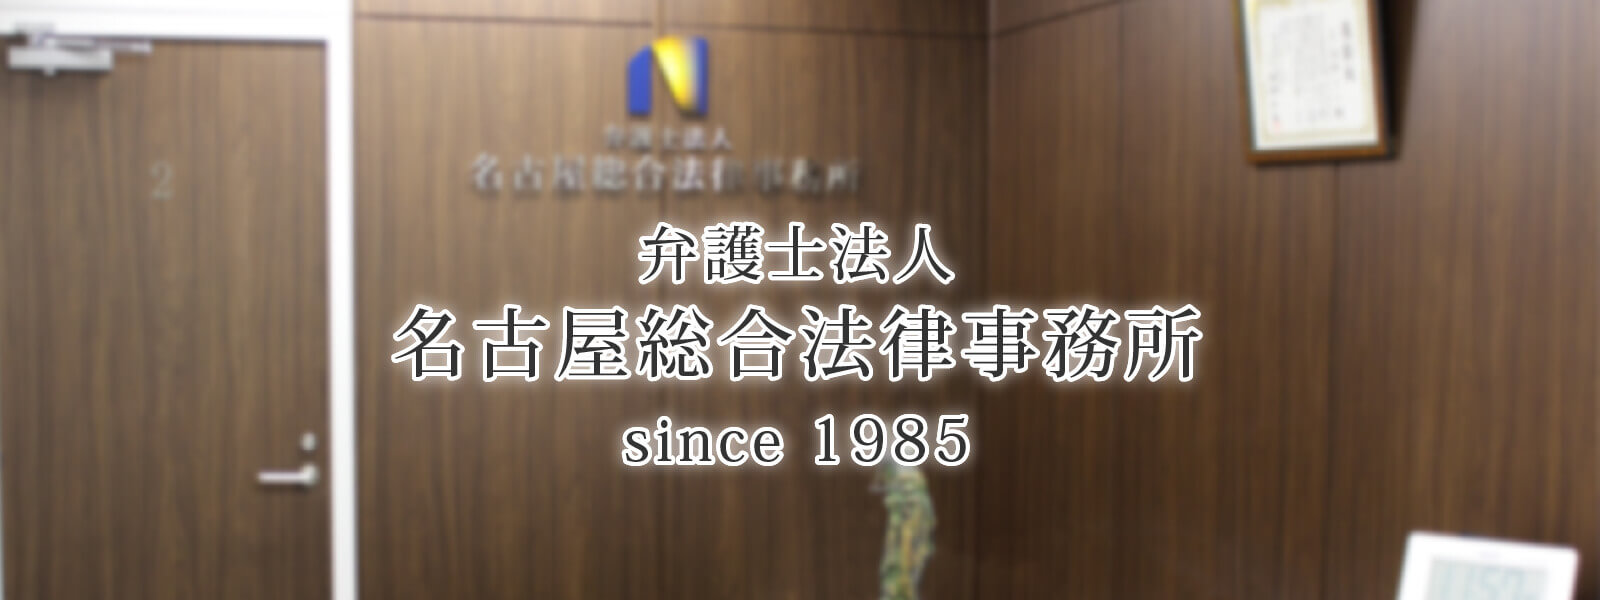 弁護士法人名古屋総合法律事務所 since1985